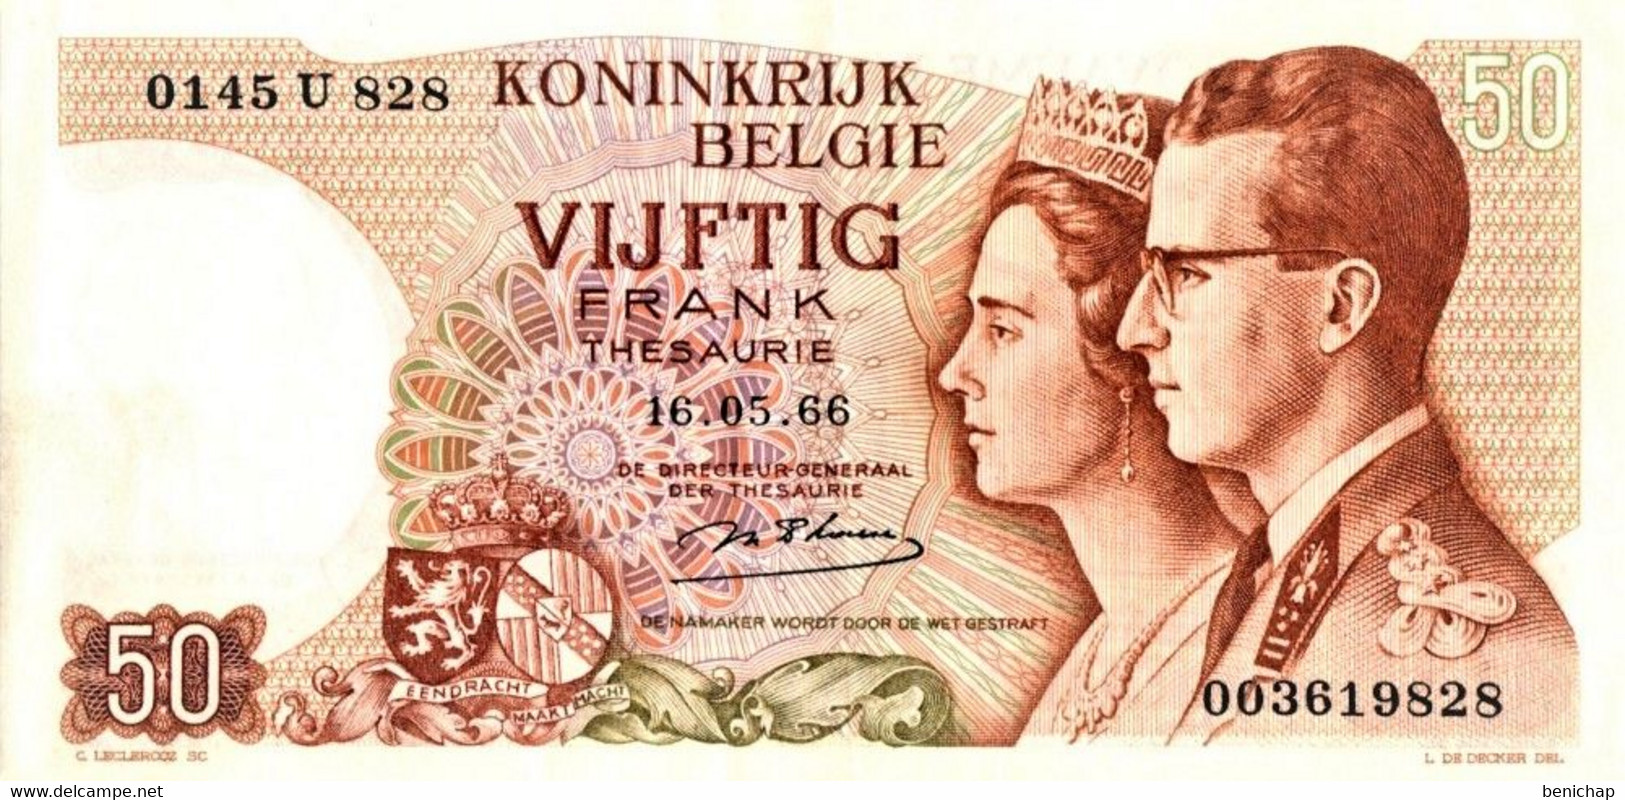 50 Francs - Frank 16.05.66 - Belgique - Belgïe - Roi Baudouin & Fabiola - UNC. - 50 Franchi